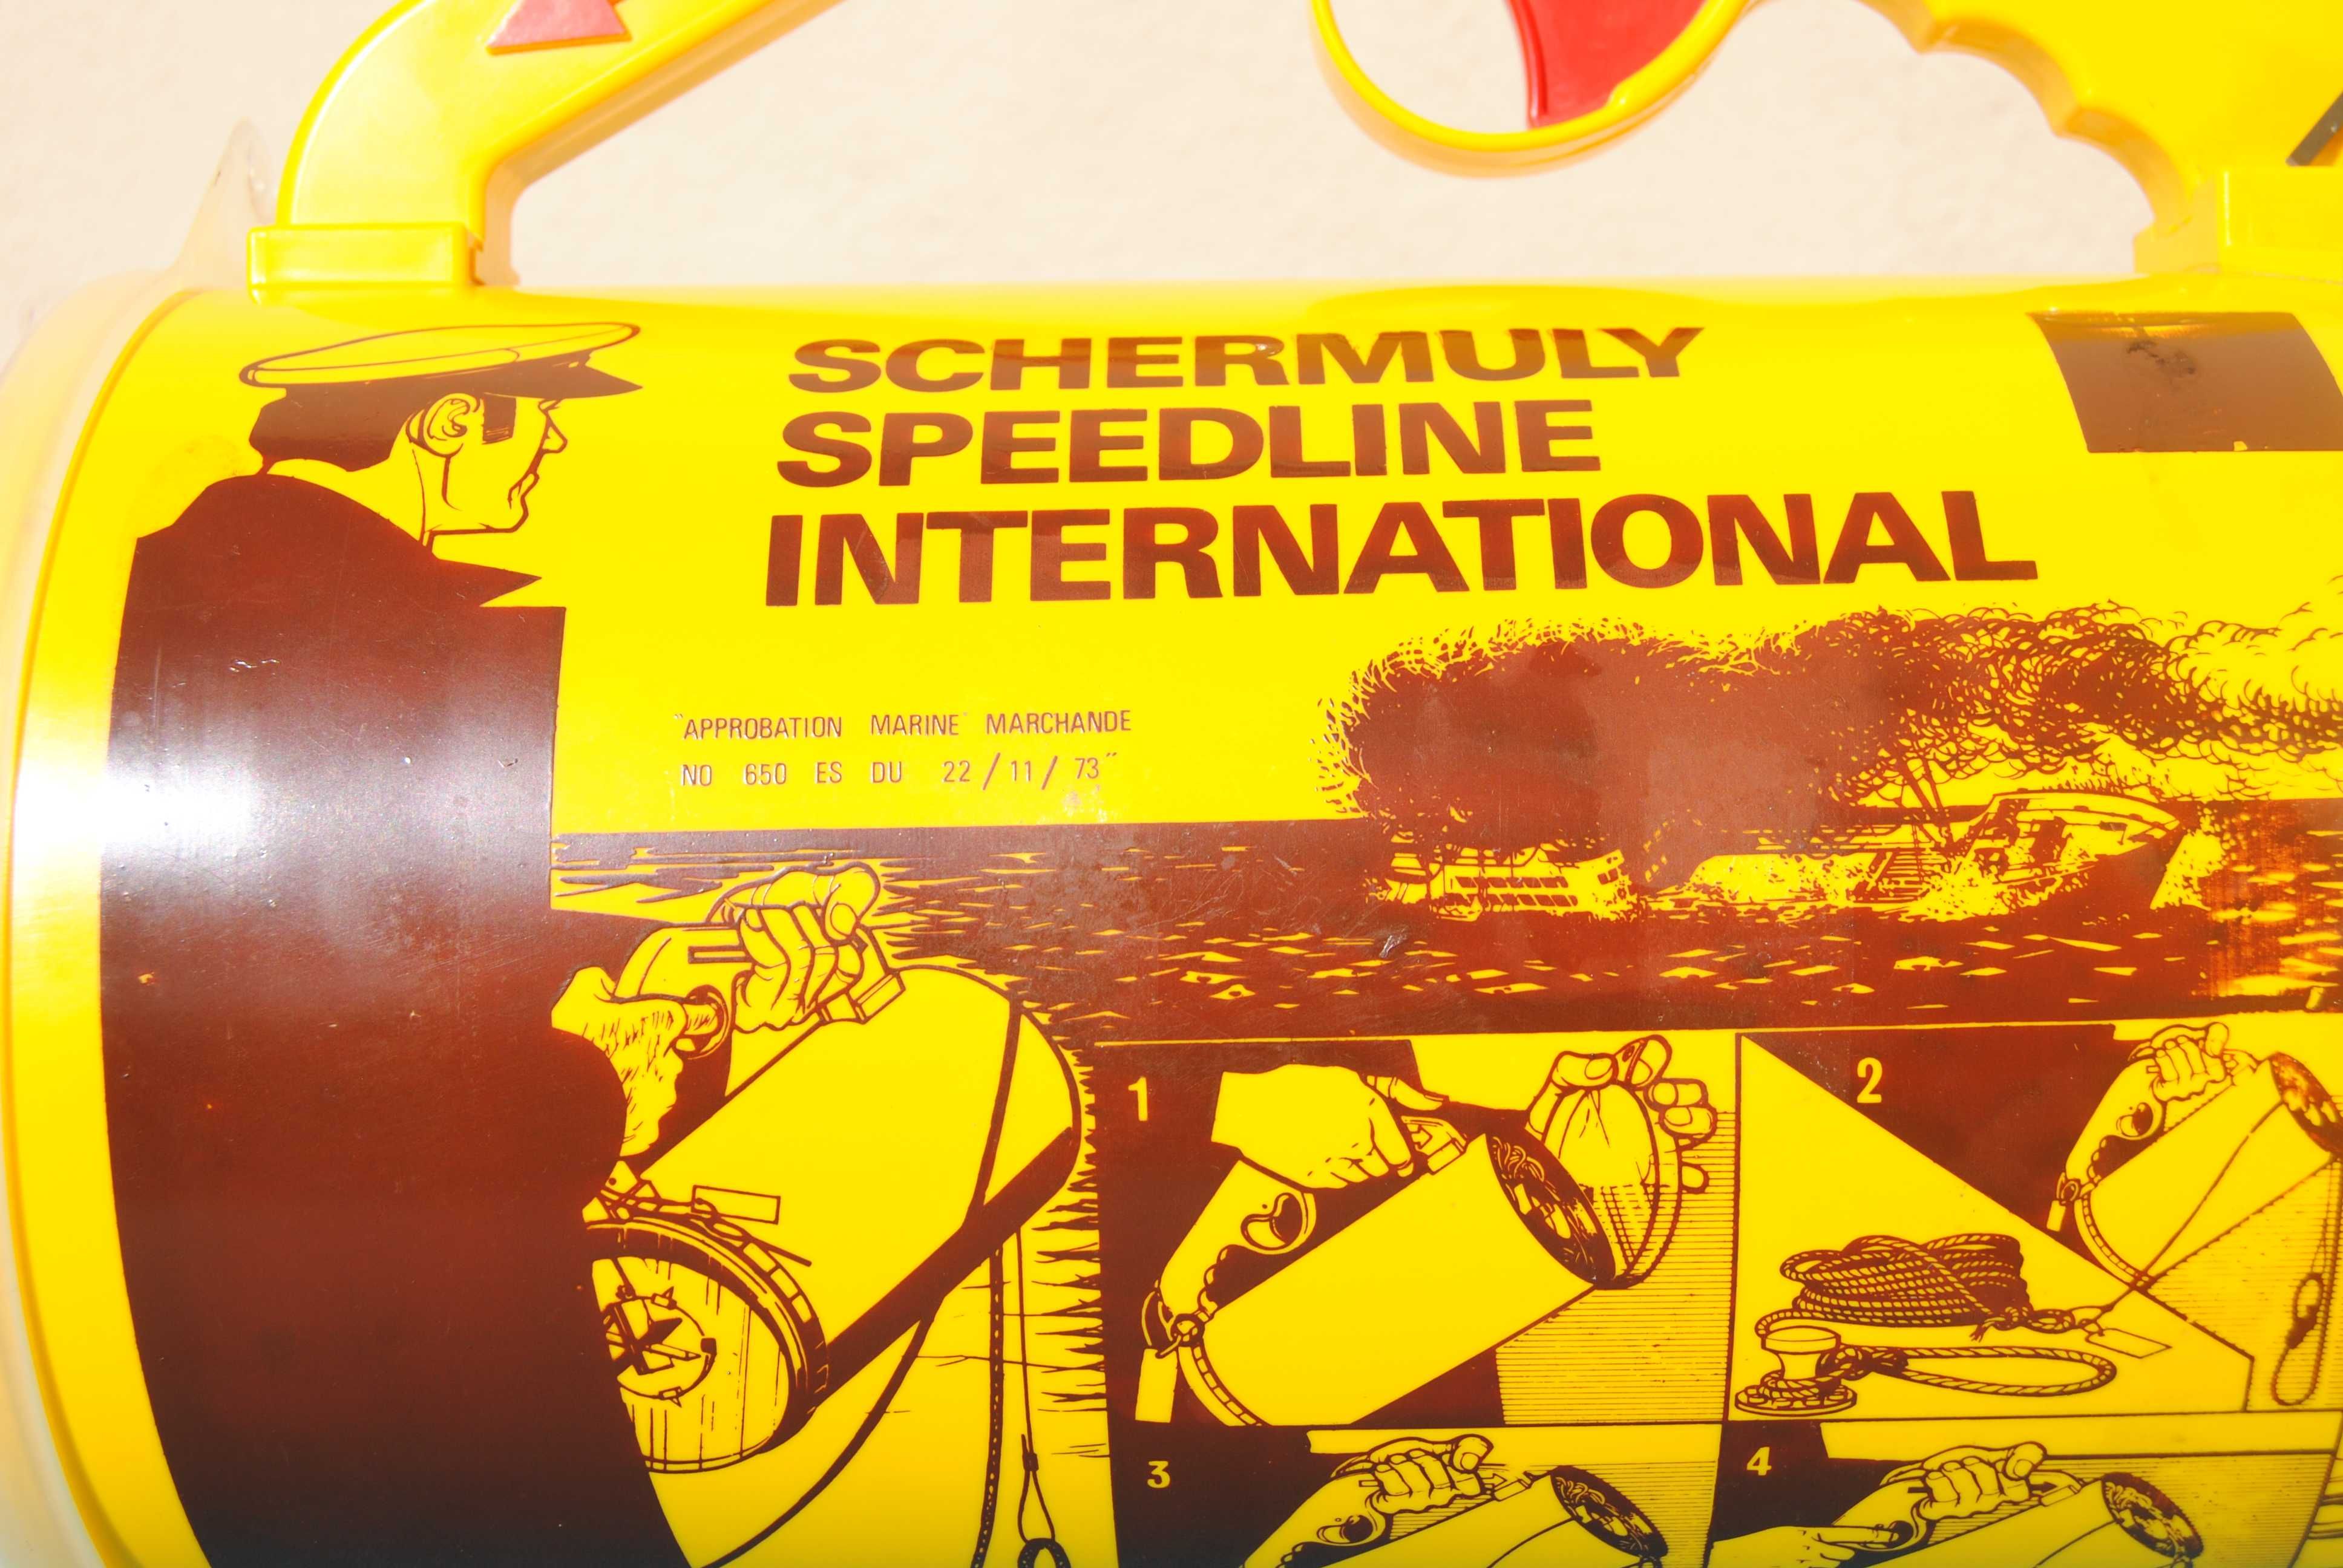 Line Throwing Device "Schermuly Speedline International" vintage